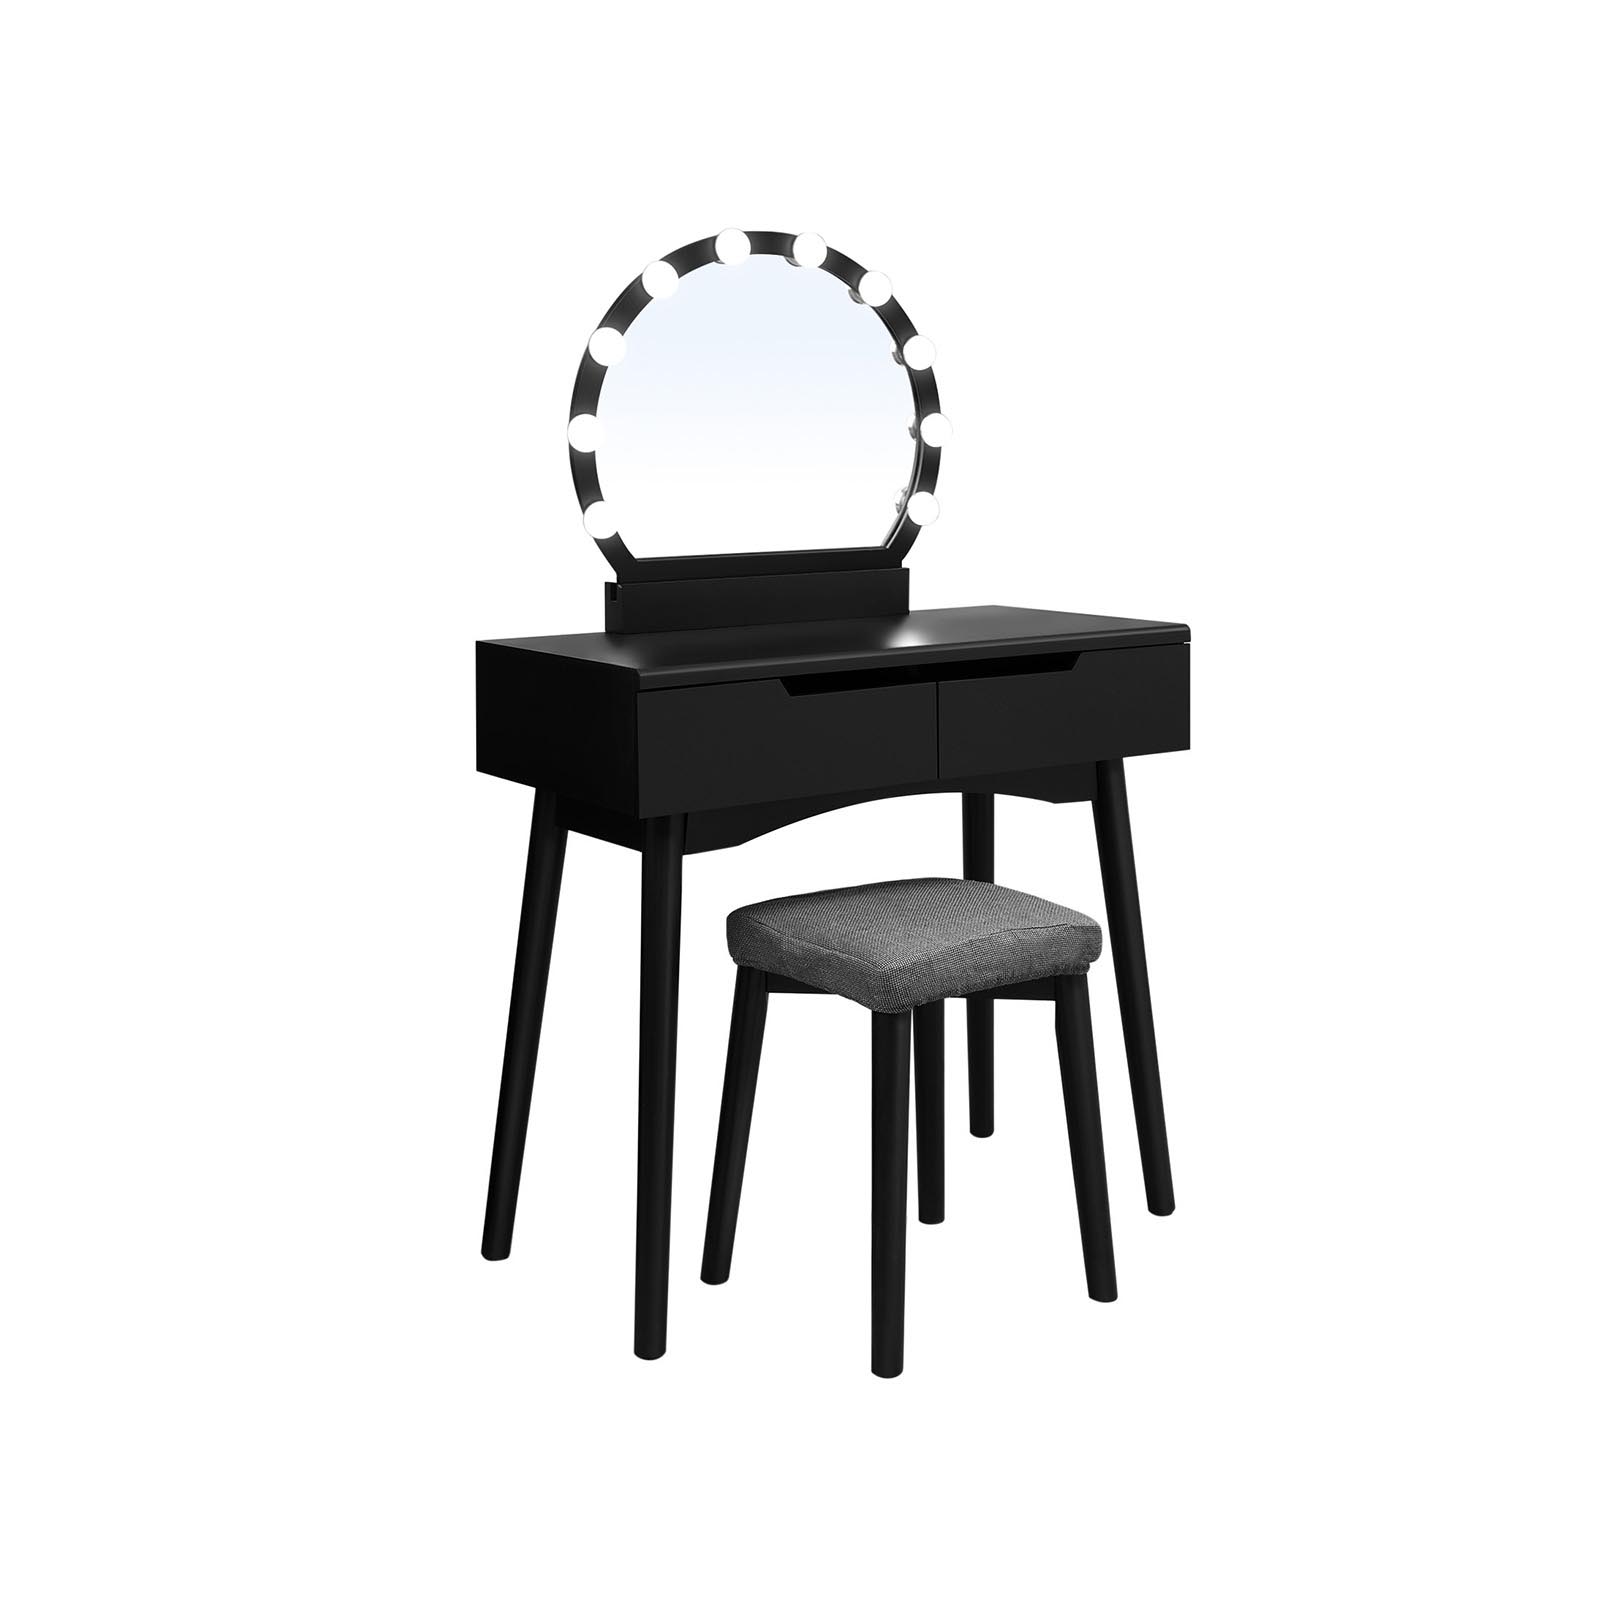 Kaptafel met spiegel en verlichting – Make up tafel – Inclusief kruk – 80 x 40 x 130.5 cm – Zwart